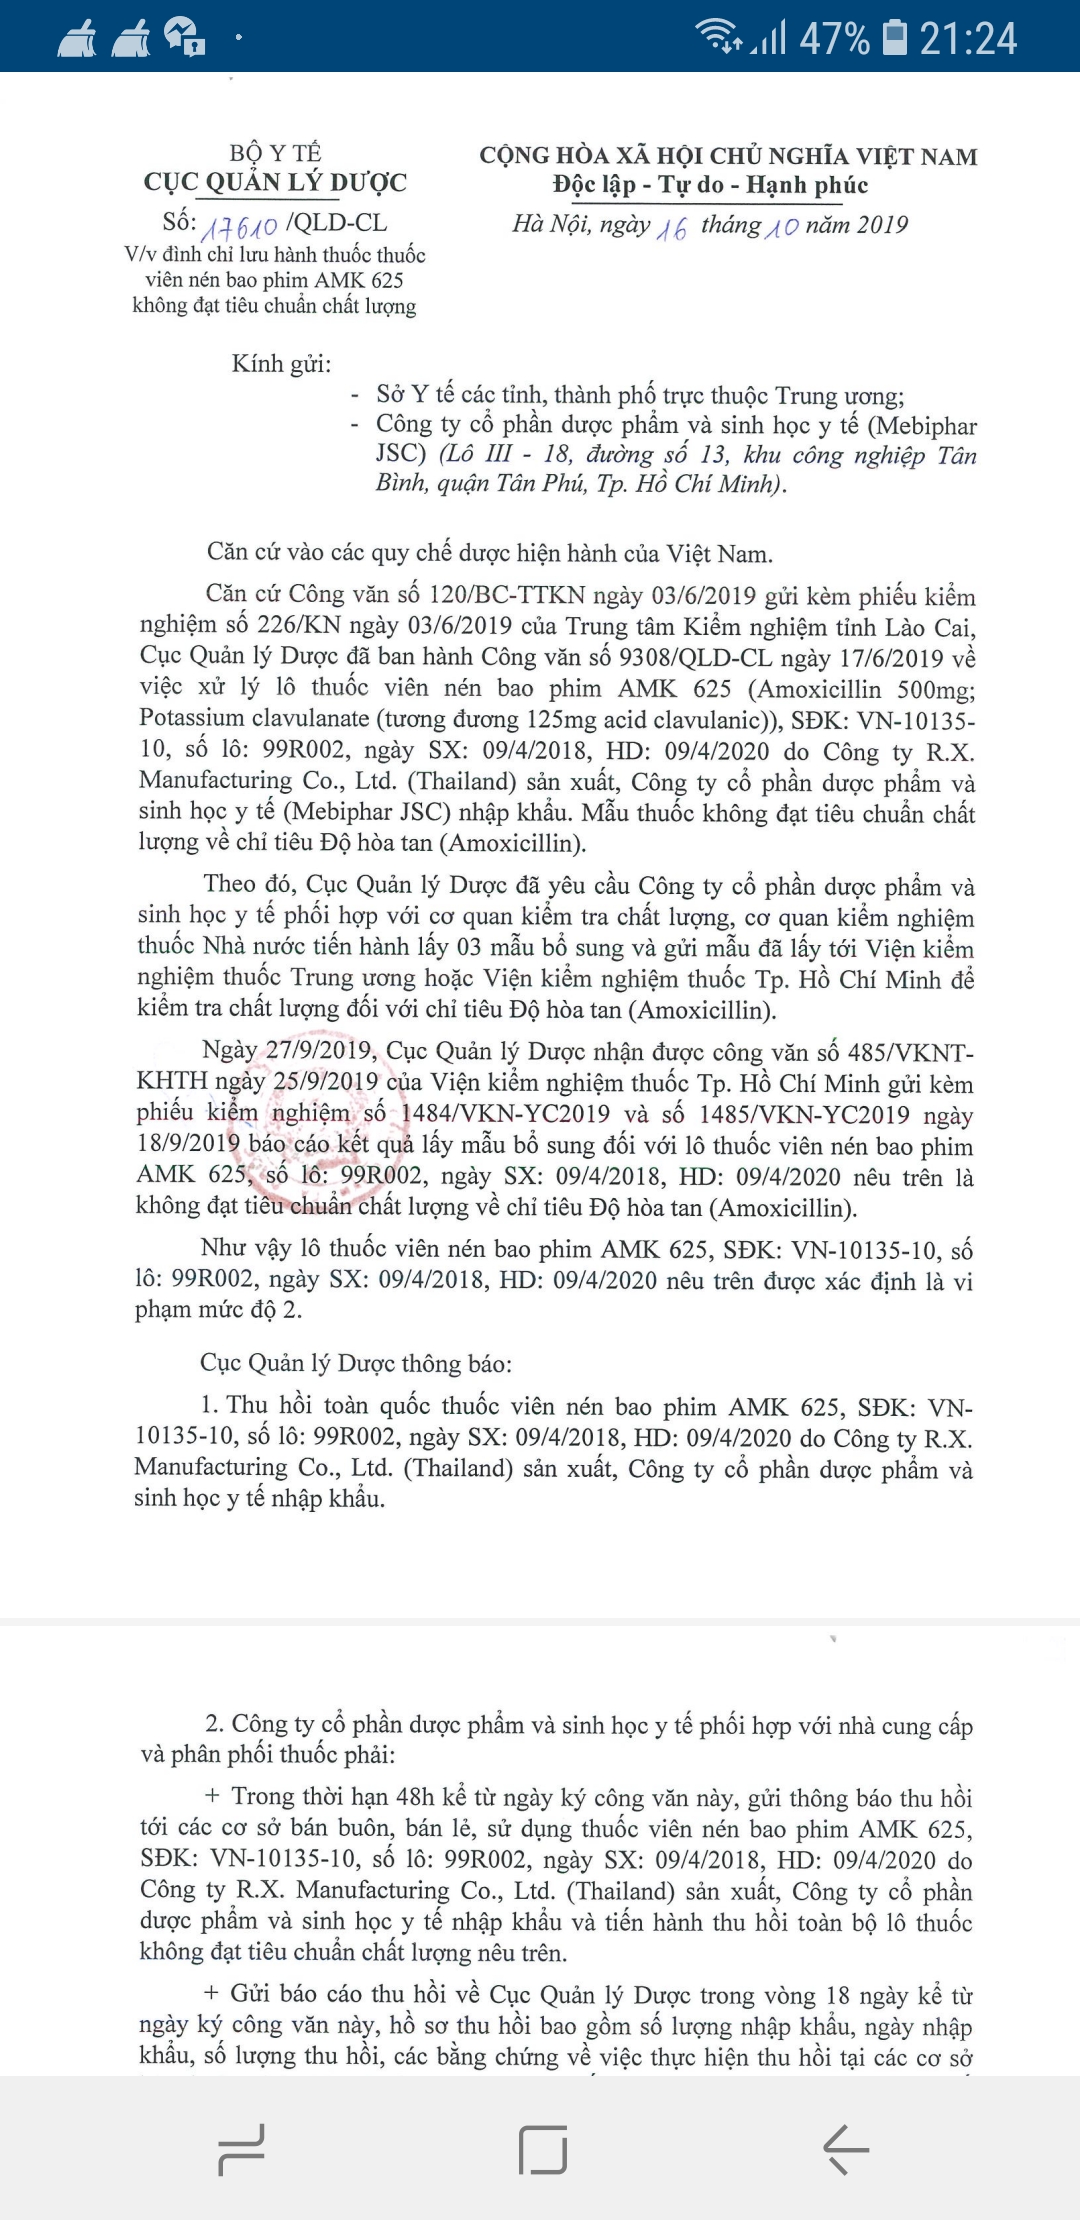 Công văn số 17610/QLD-CL ngày 16/10/2019 thể hiện rõ lô thuốc viên nén bao phim AMK 625 nhập khẩu được phát hiện không đạt tiêu chuẩn chất lượng là do trung tâm kiểm nghiệm tỉnh Lào Cai “chỉ mặt”